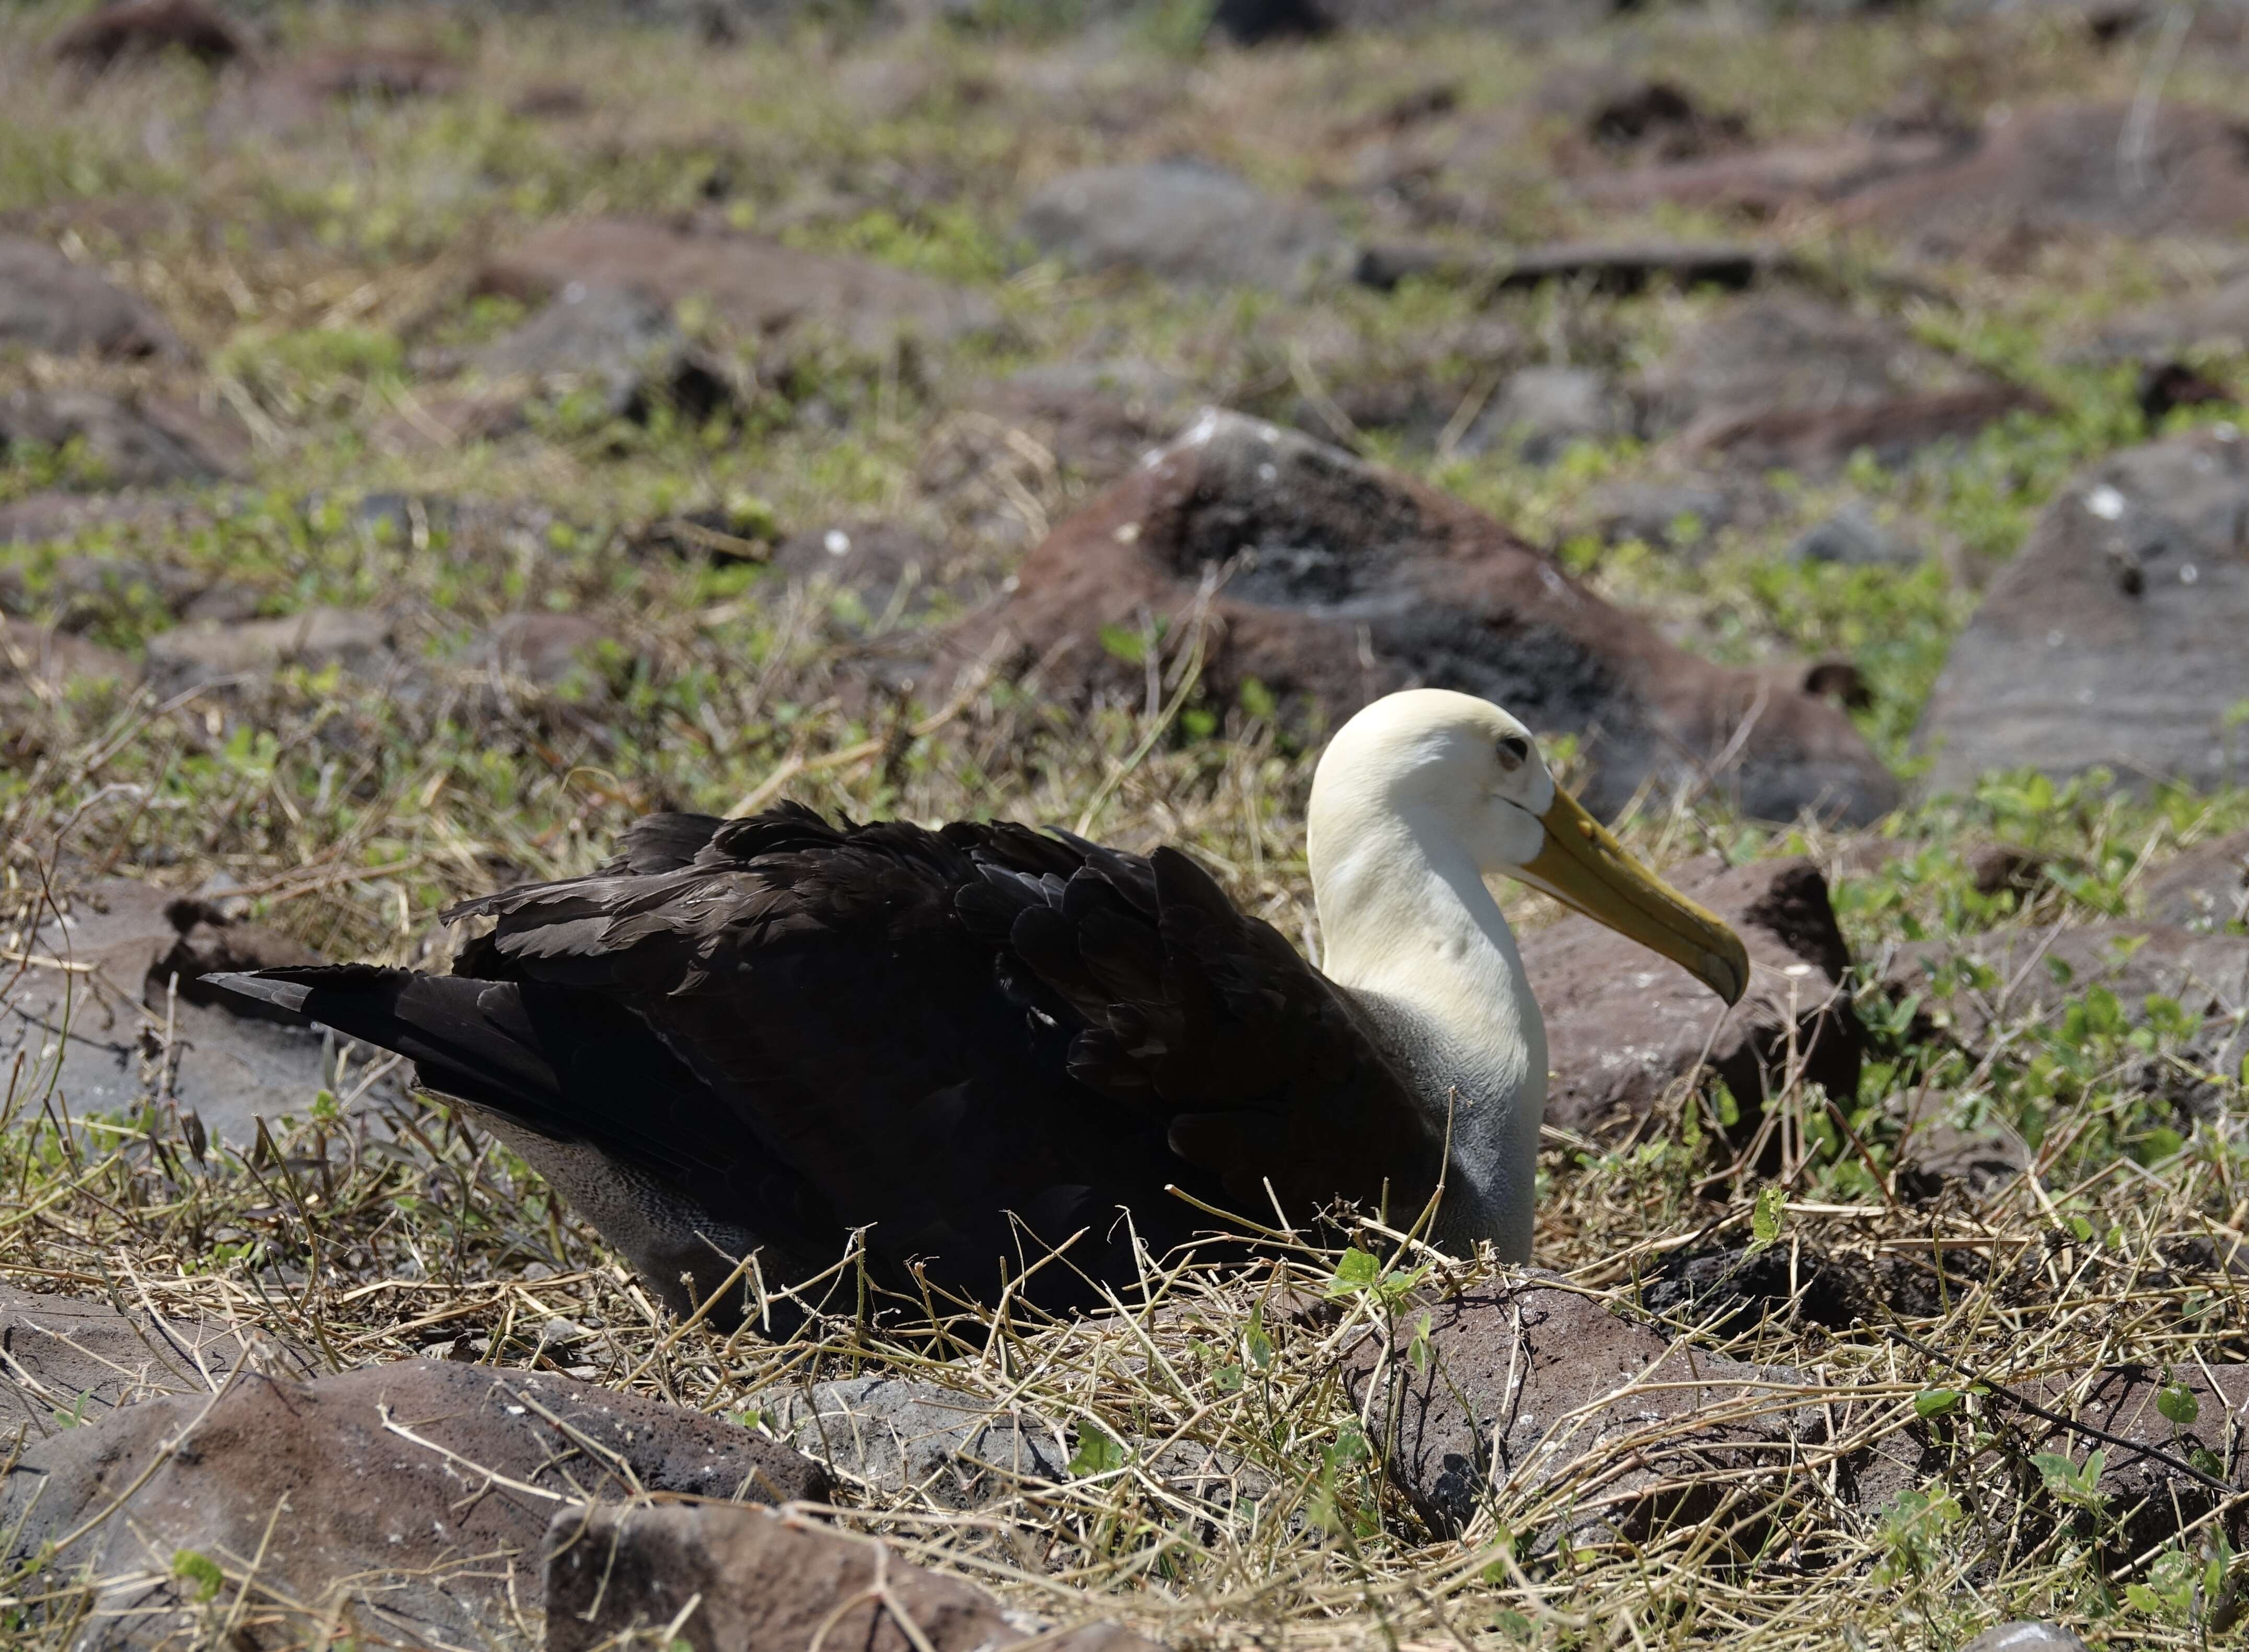 Image of Waved Albatross